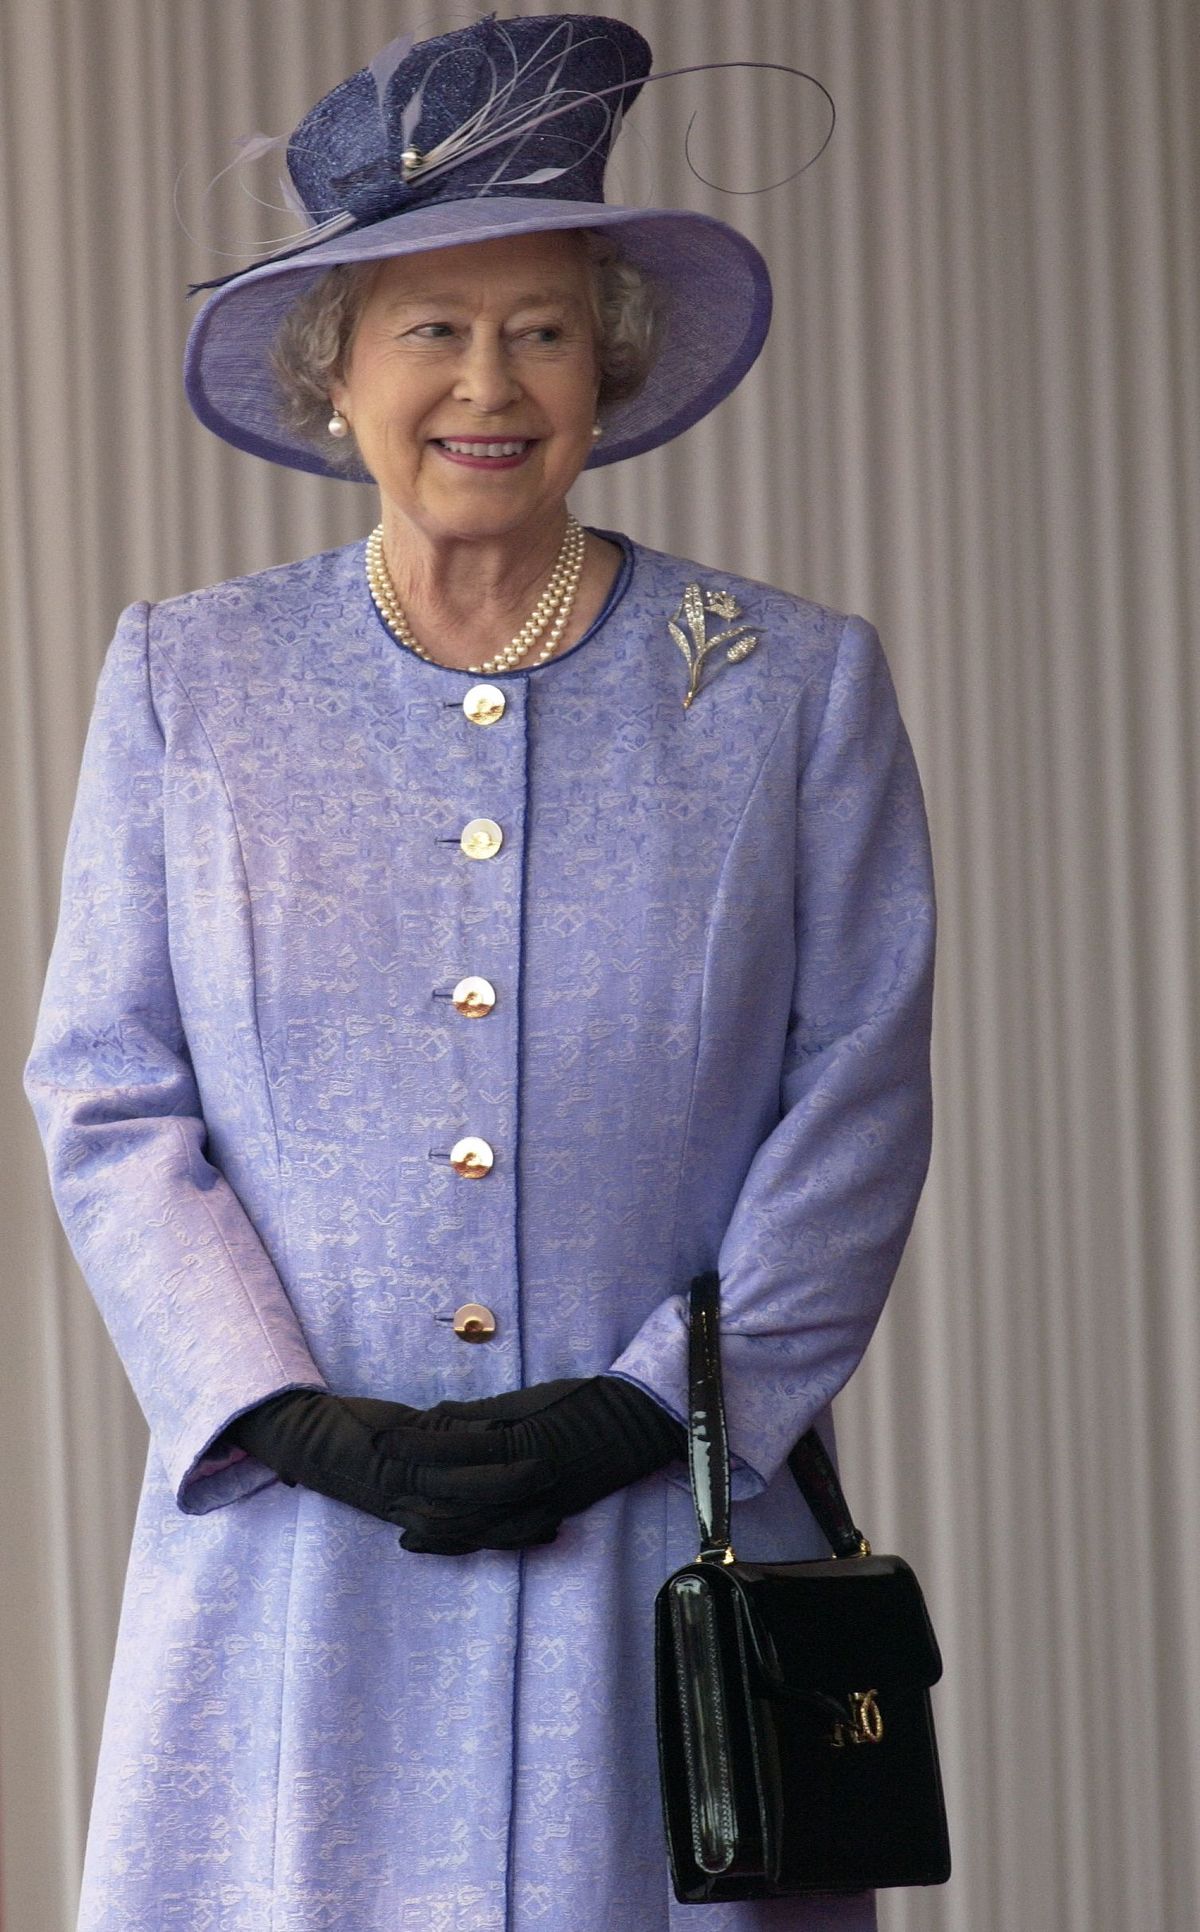 Kraljičina najljubša blagovna znamka torbic je za njen rojstni dan izdala nove sloge